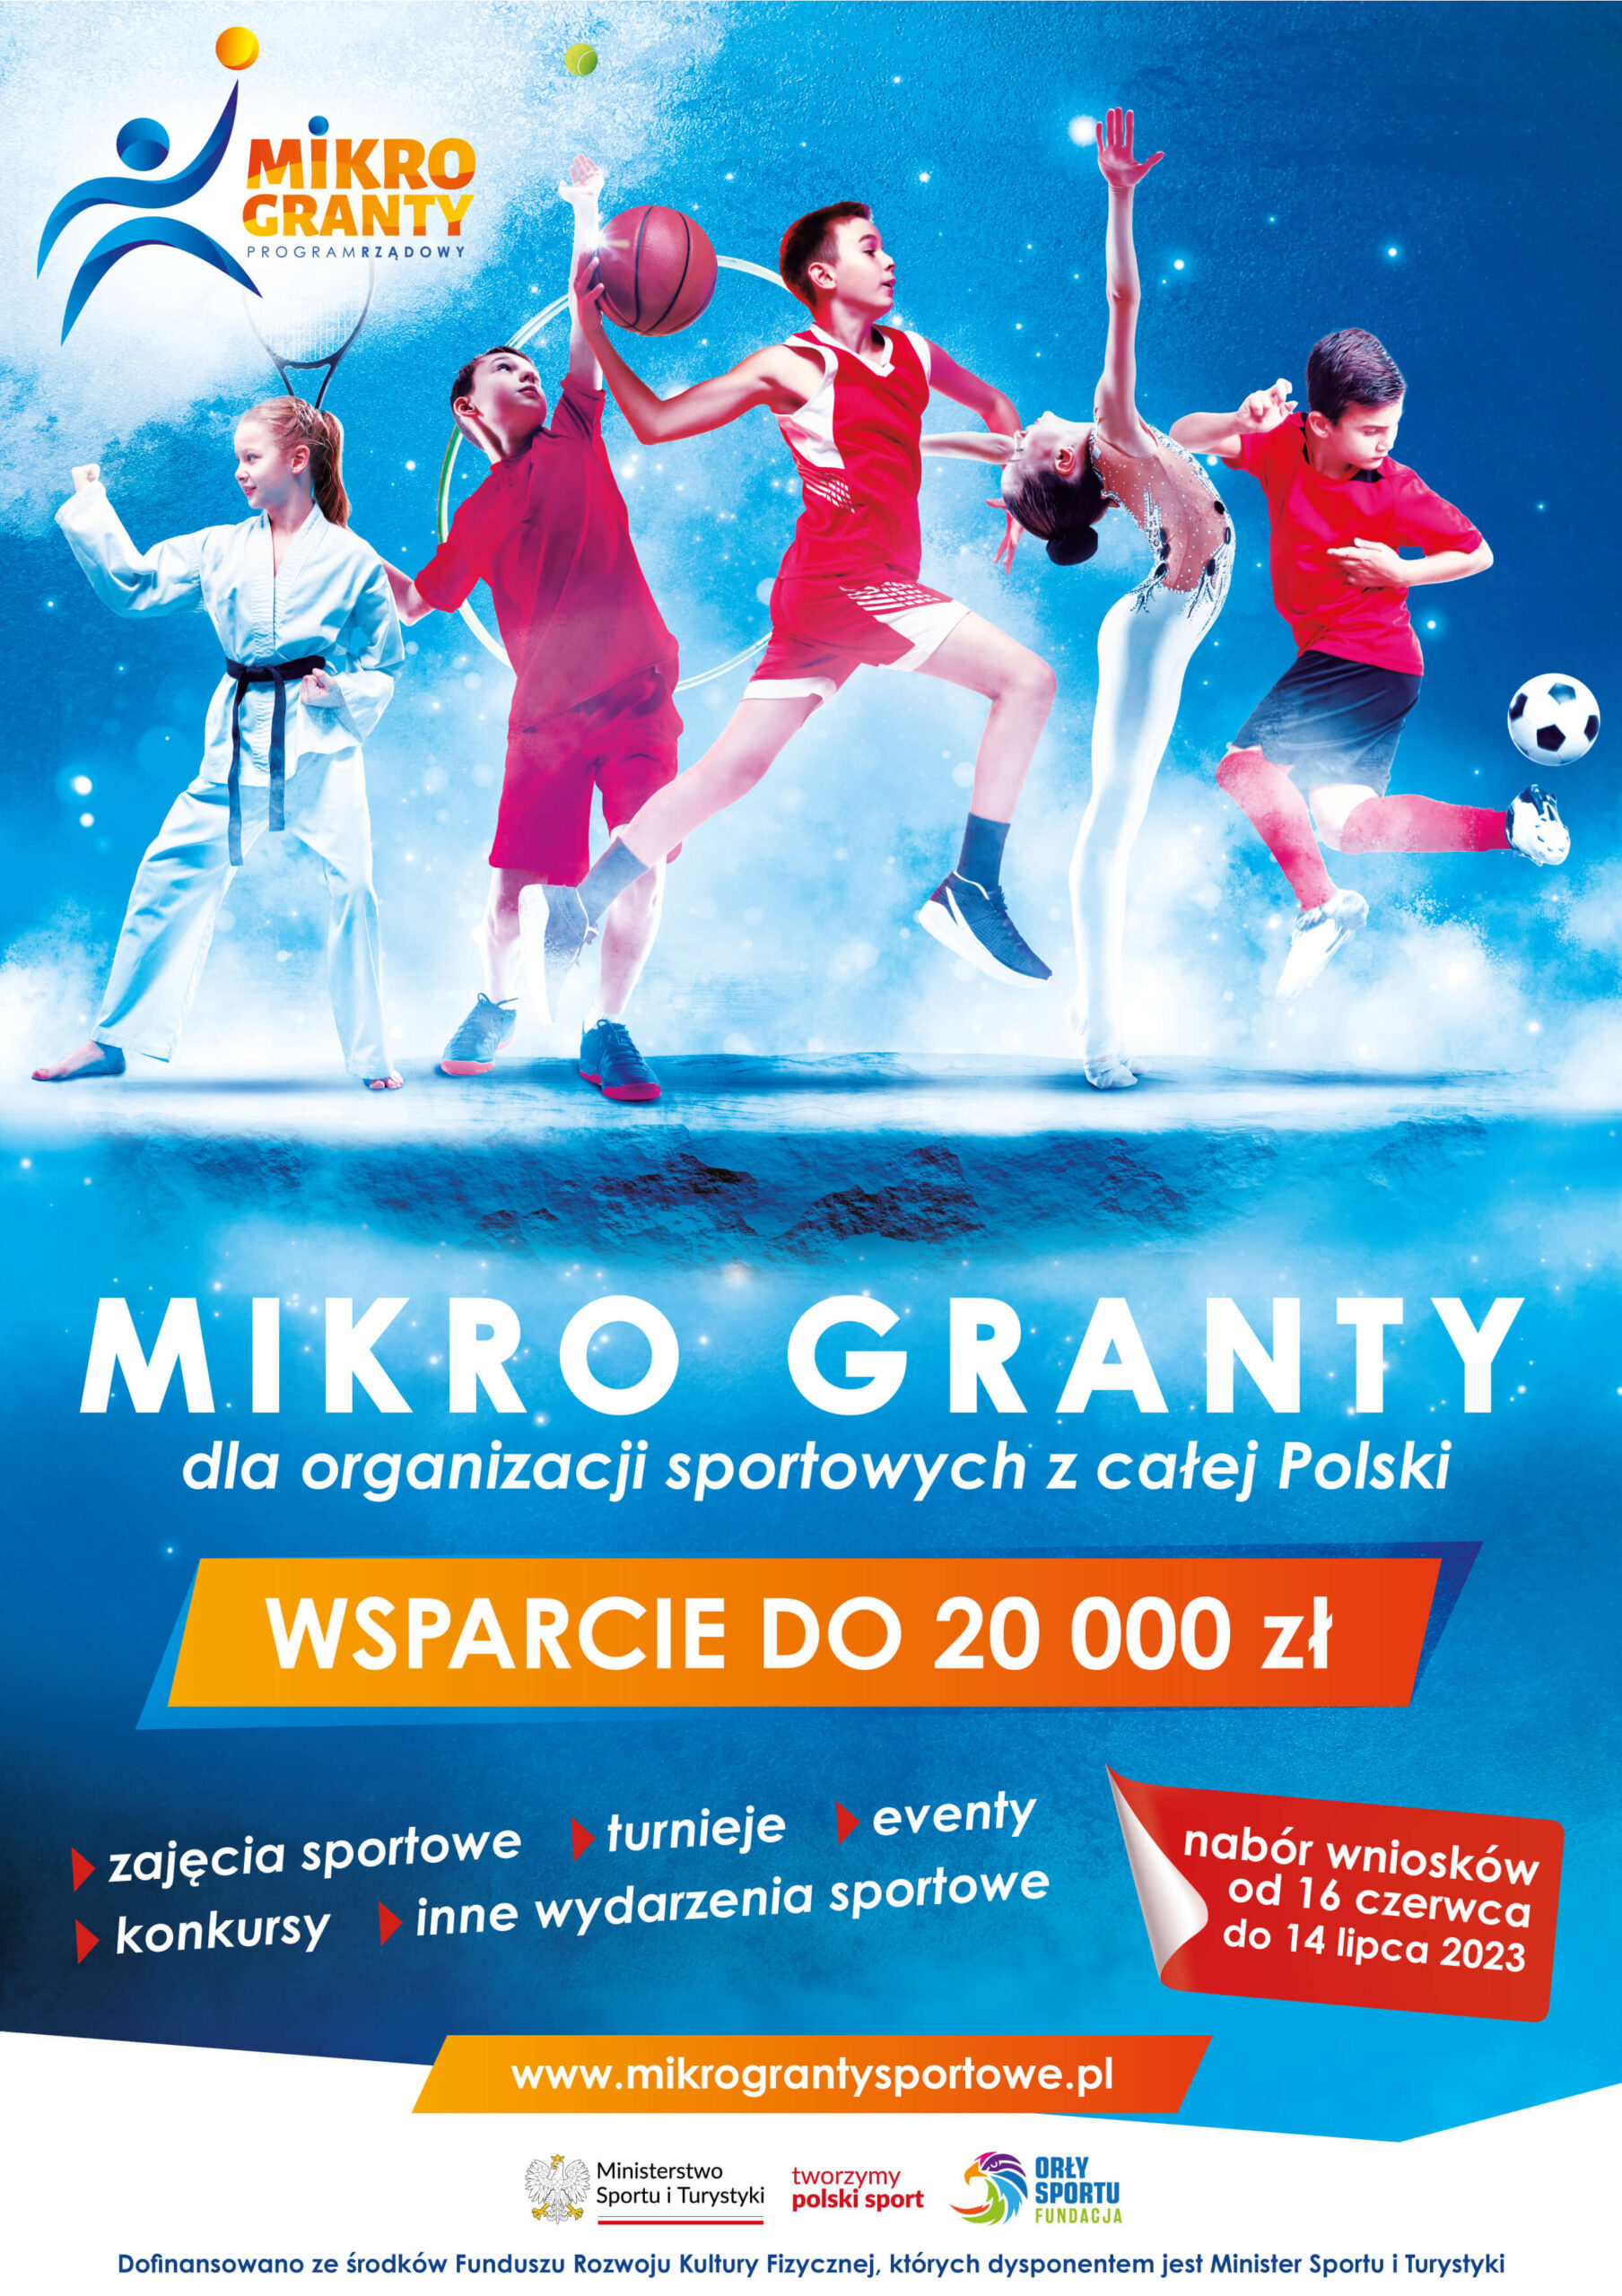 Mikro Granty - duże wsparcie dla małych projektów sportowych Mikro Granty